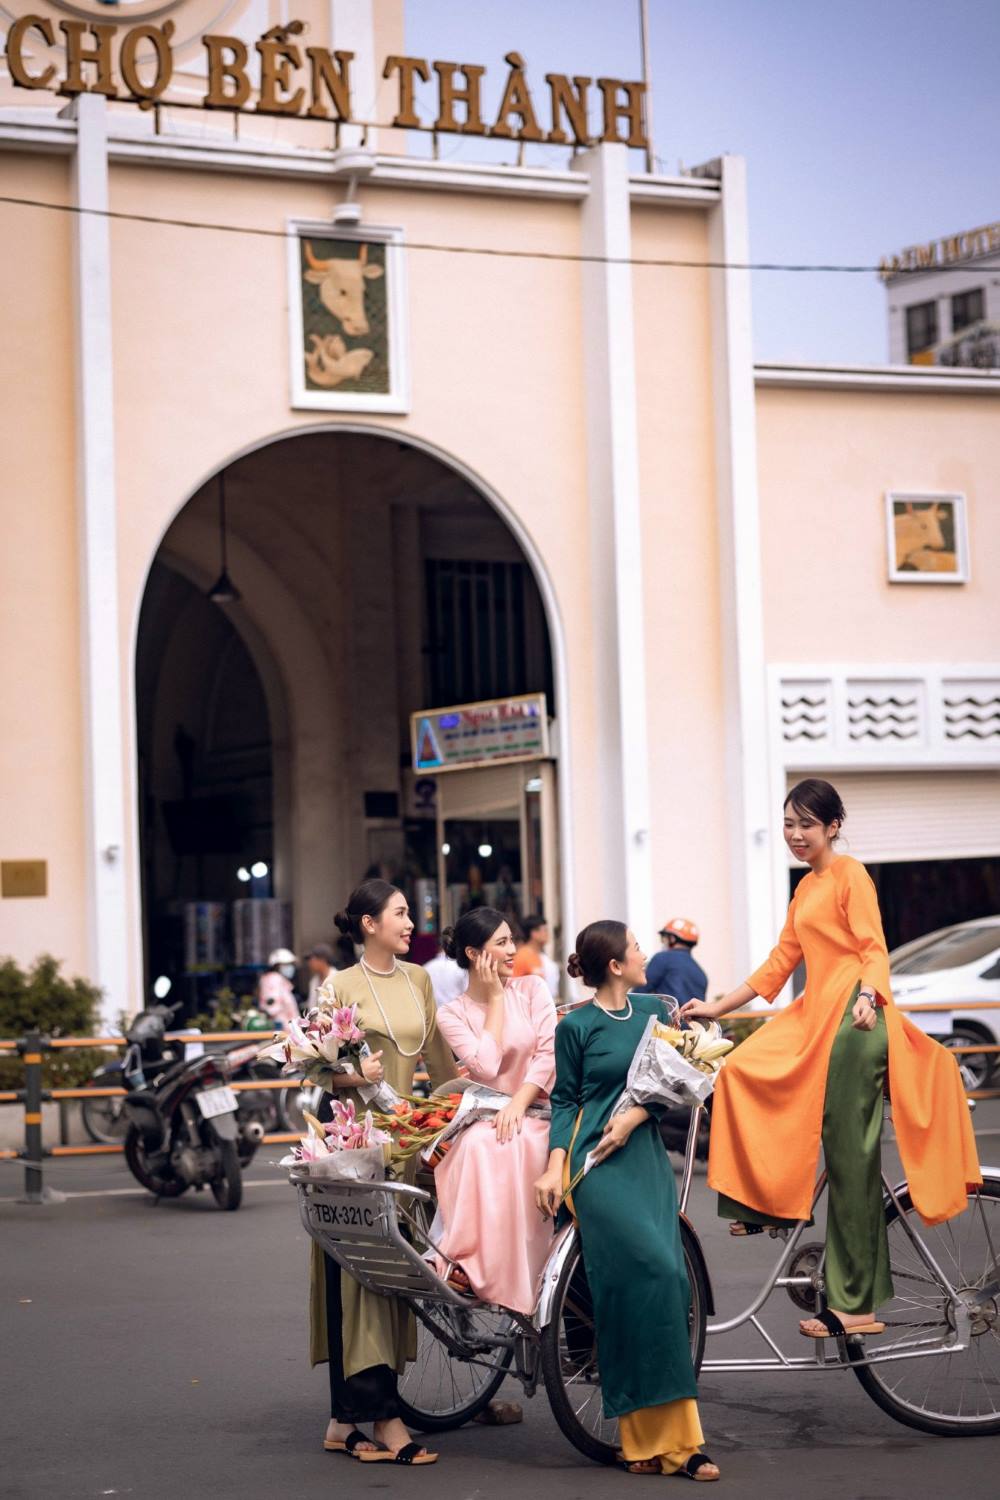 Năm nay, chợ Bến Thành cũng thu hút đông đảo người dân đến check in vì đây là biểu tượng của TPHCM. 